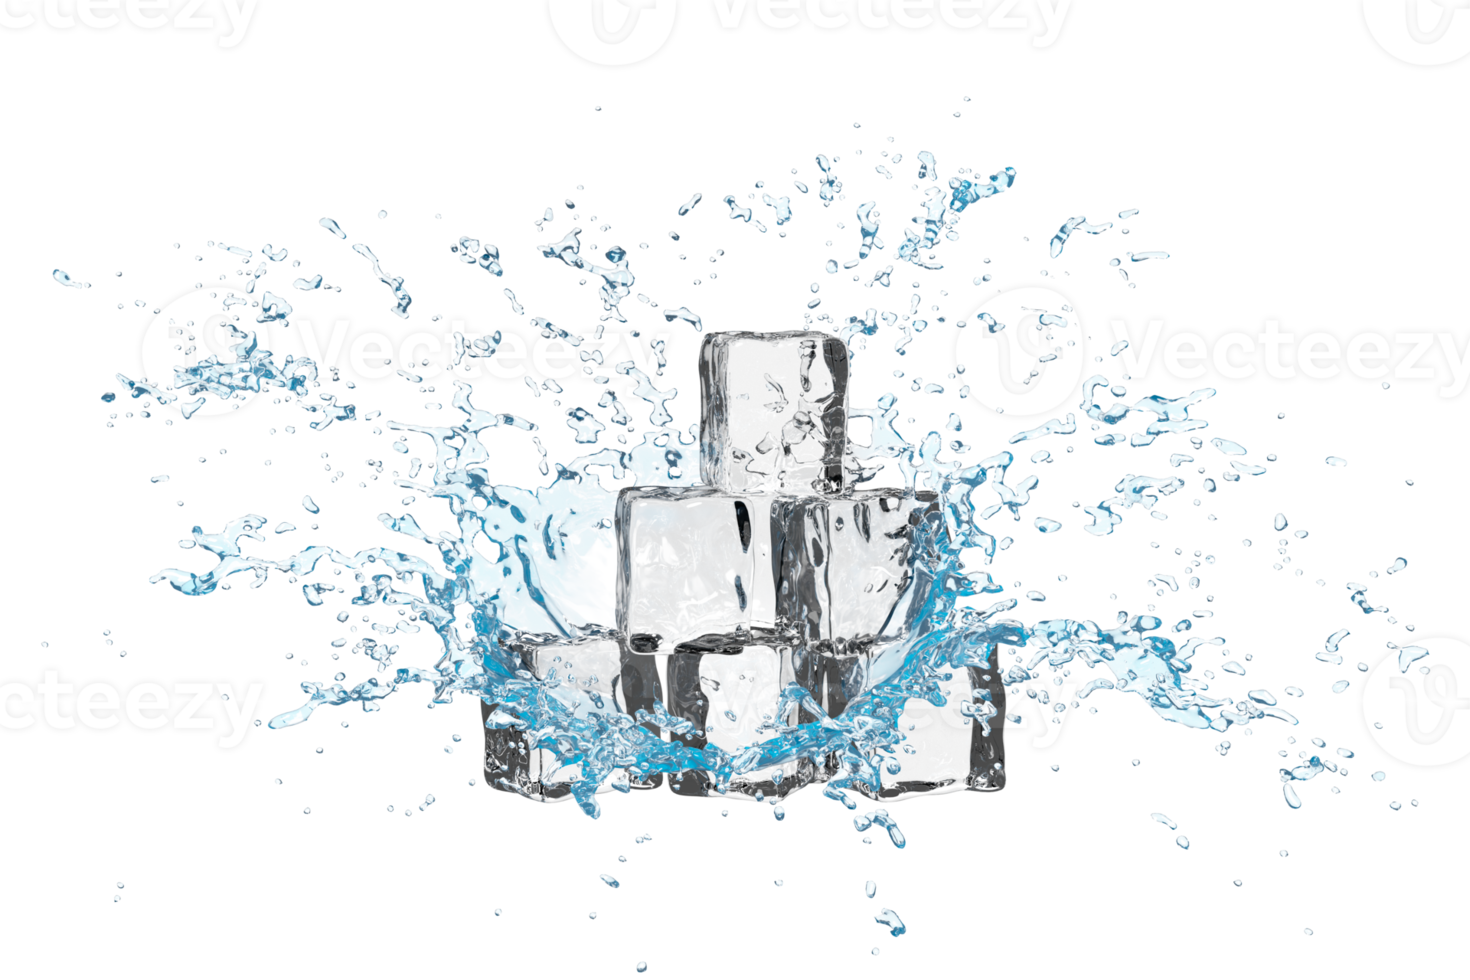 Cubos de gelo 3d com respingos de água transparente, água azul clara espalhados por aí isolado. ilustração de renderização 3D png